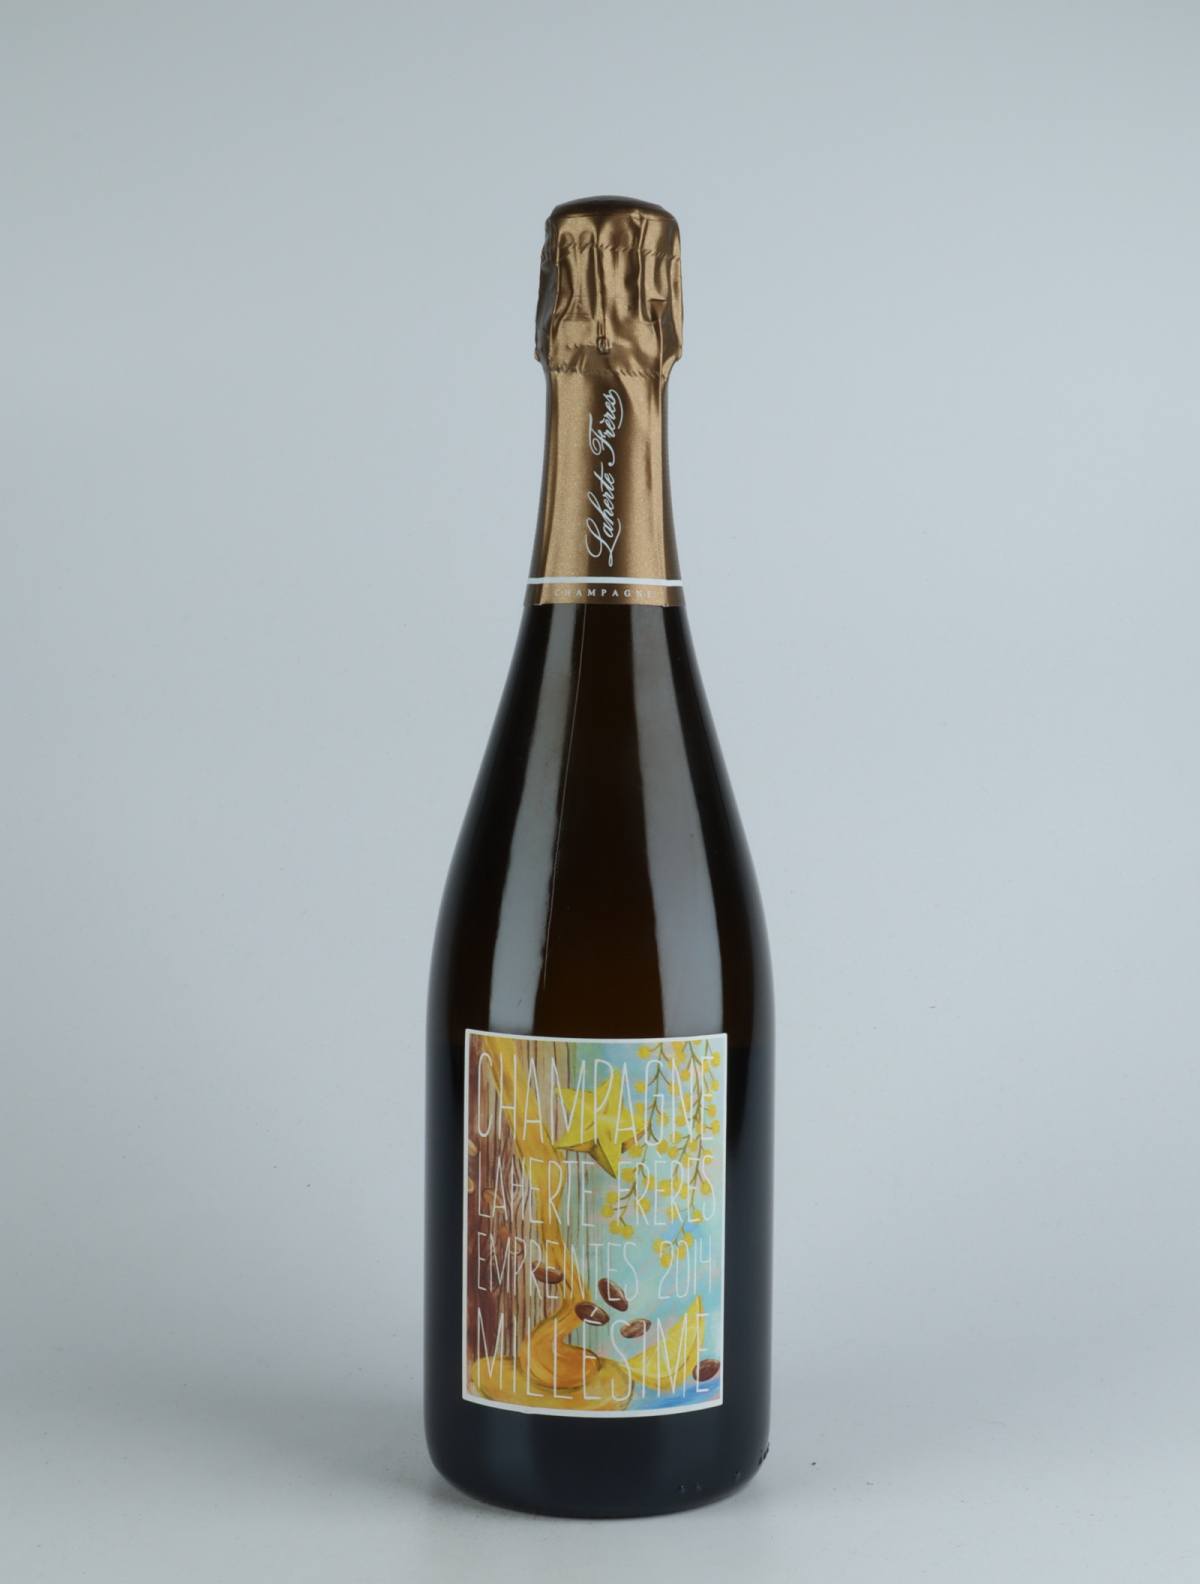 A bottle 2014 Les Empreintes - Extra Brut Sparkling from Laherte Frères, Champagne in France